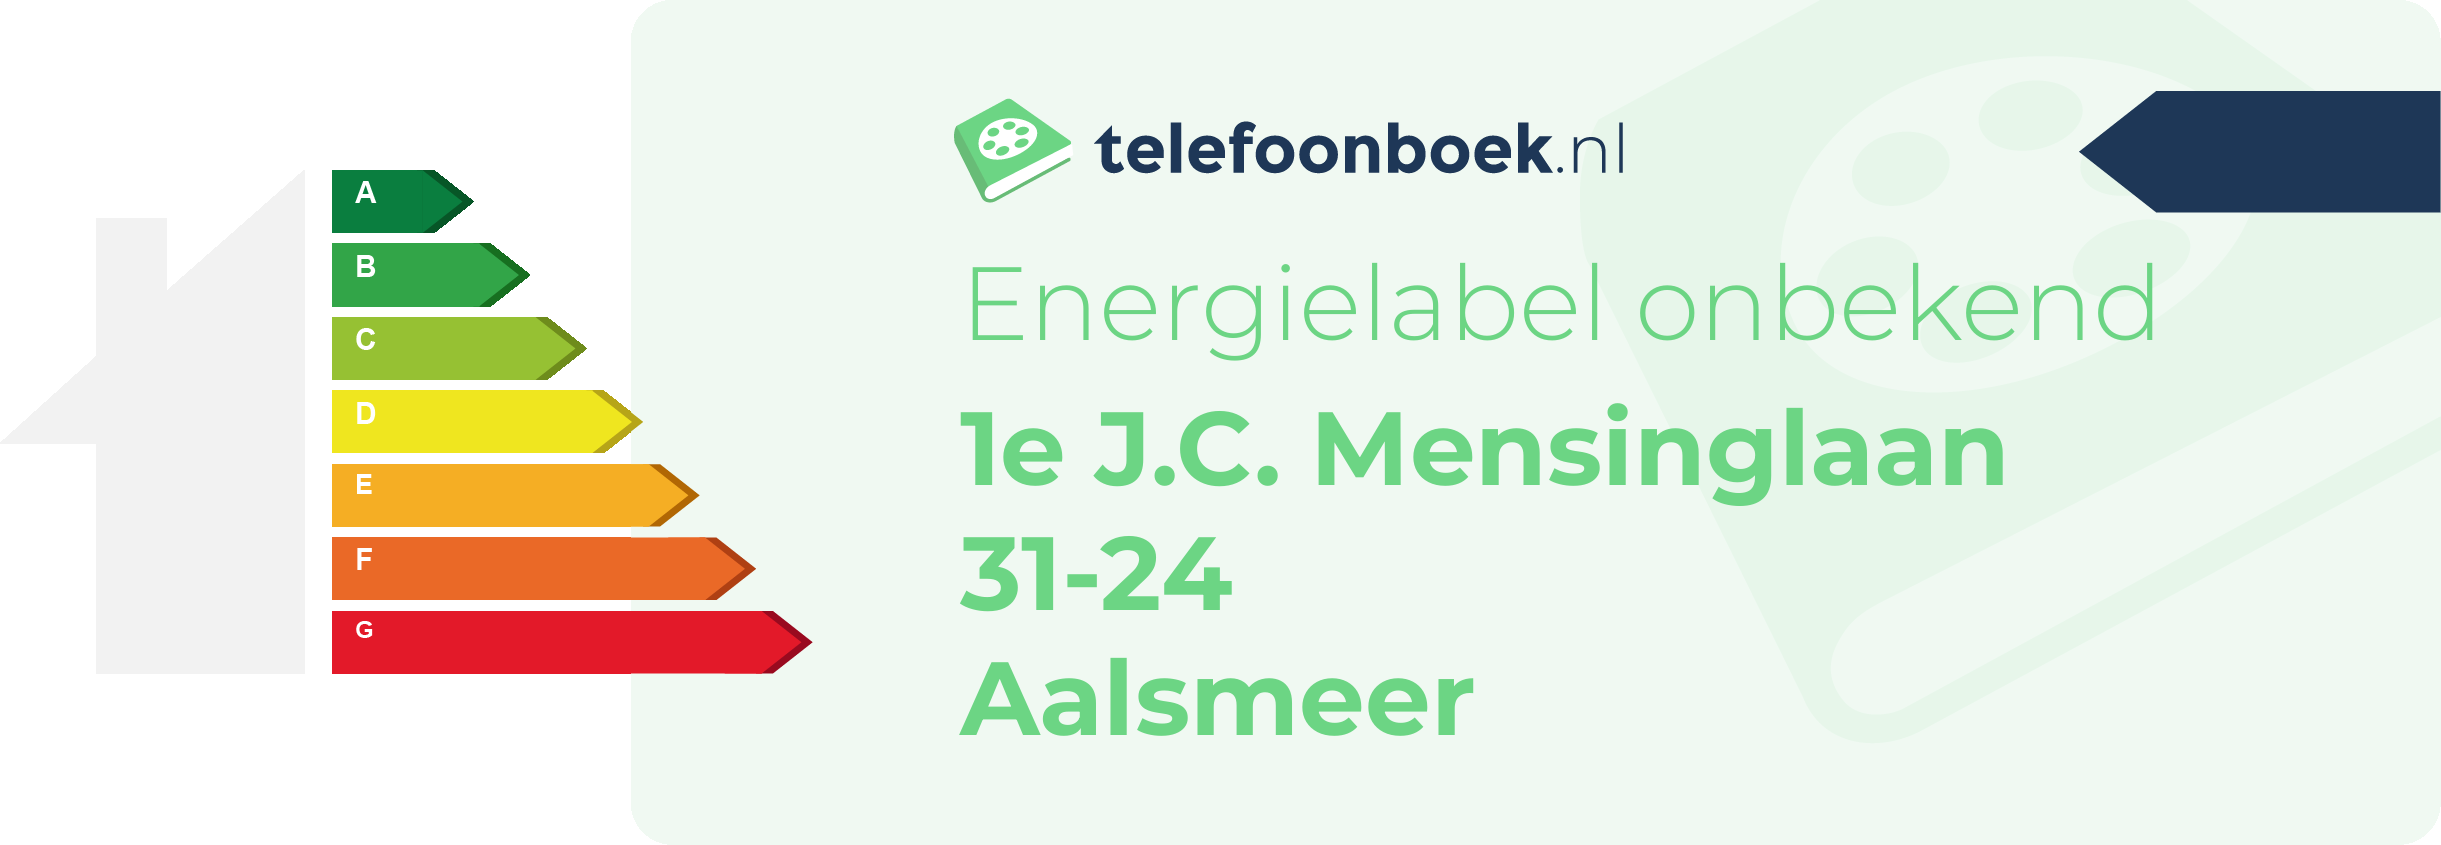 Energielabel 1e J.C. Mensinglaan 31-24 Aalsmeer